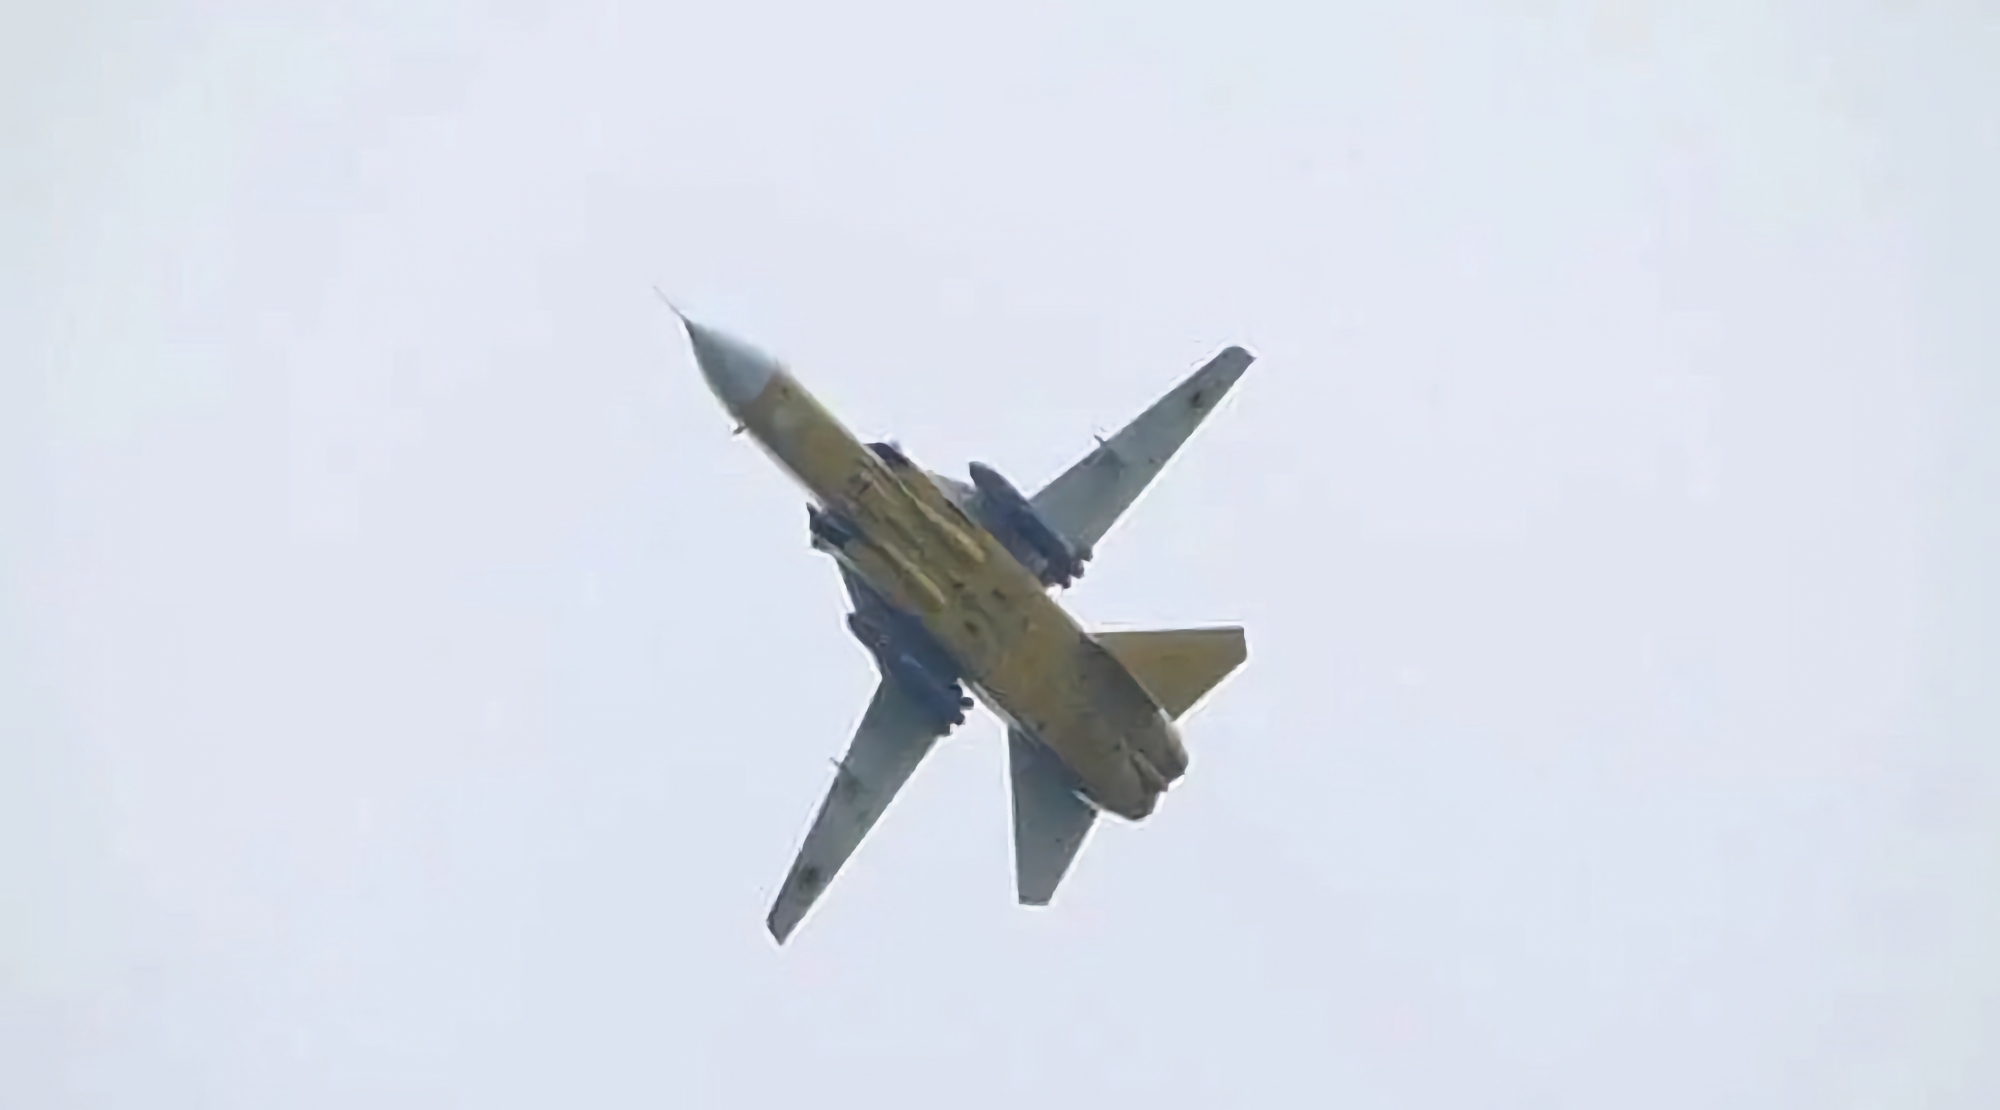 Ukrainisches Kampfflugzeug Su-24M mit Storm Shadow-Raketen auf Video zu sehen